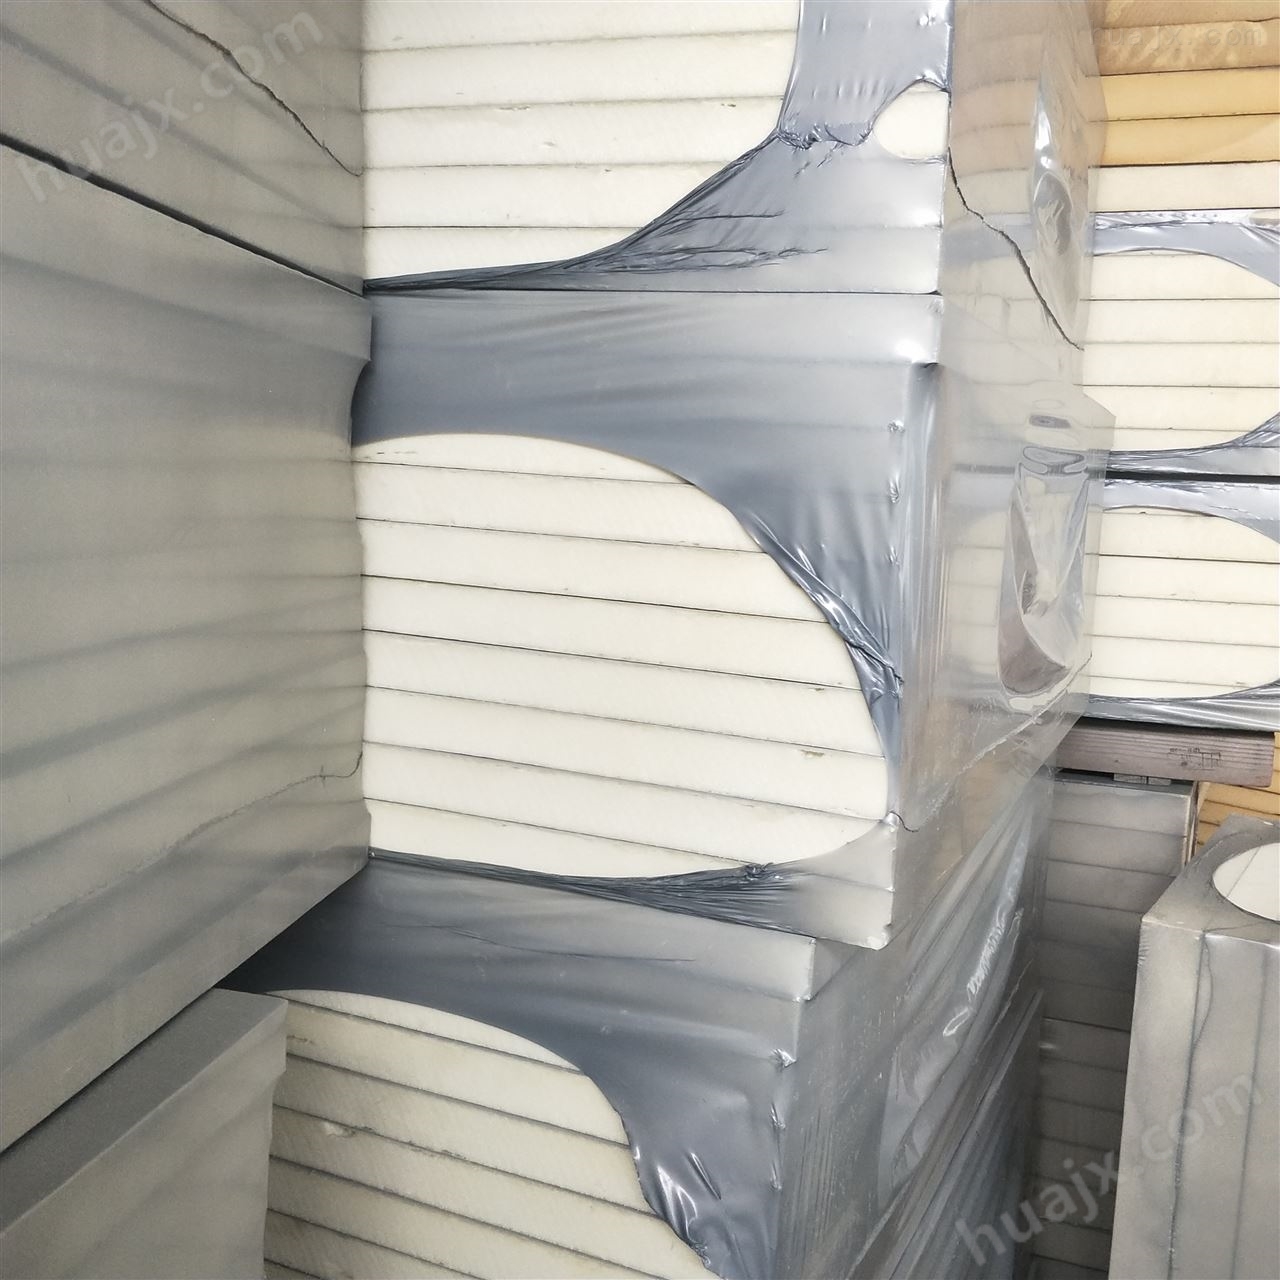 B2级外墙聚氨酯硬质发泡保温板质量优价格低